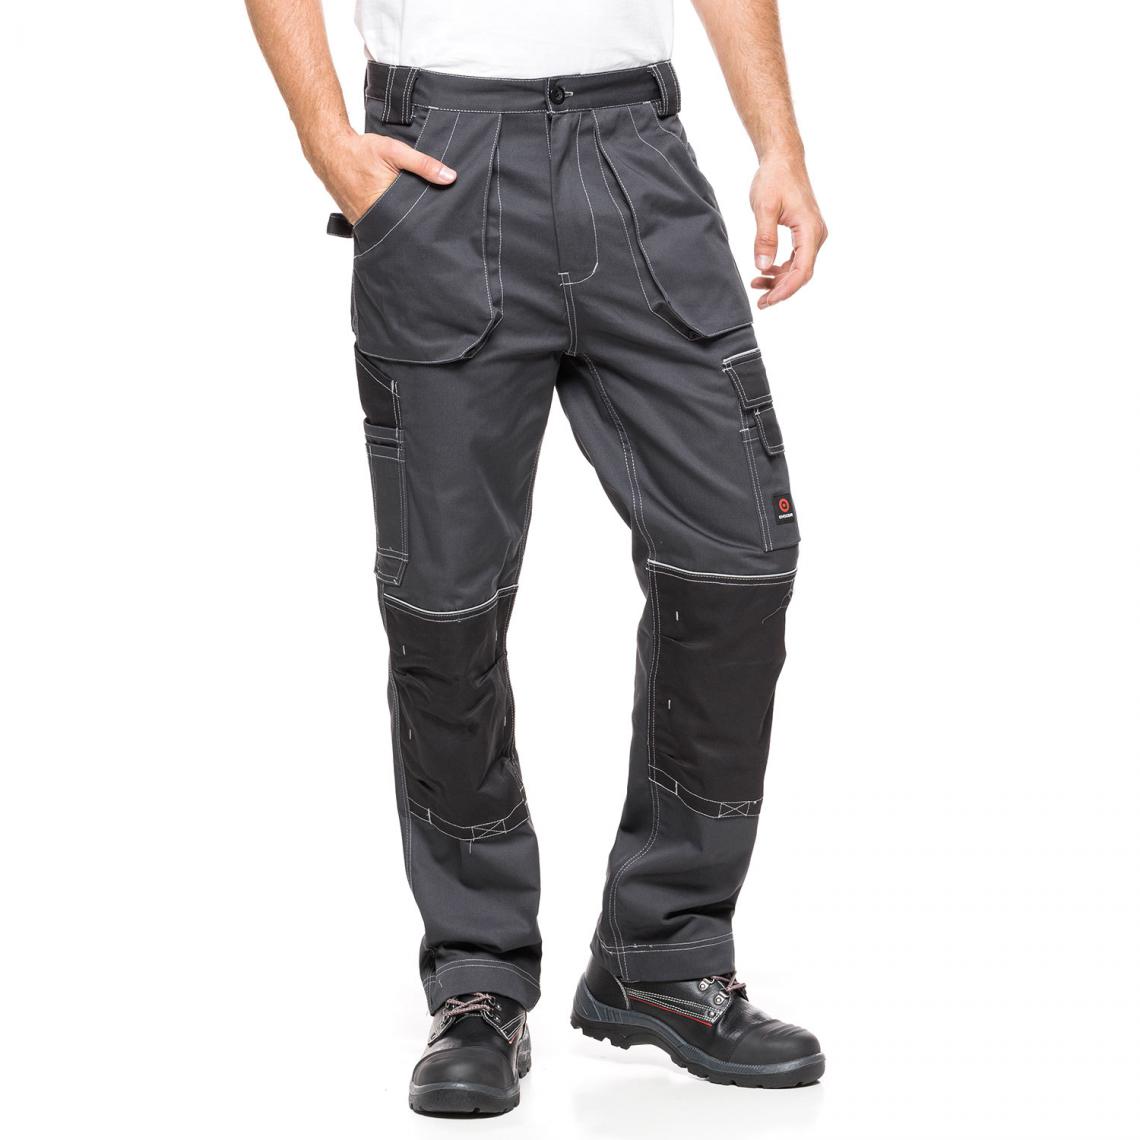 Sans Marque - Pantalon de travail Avacore HELIOS gris-noir Taille 54 (98-103) - Protections corps